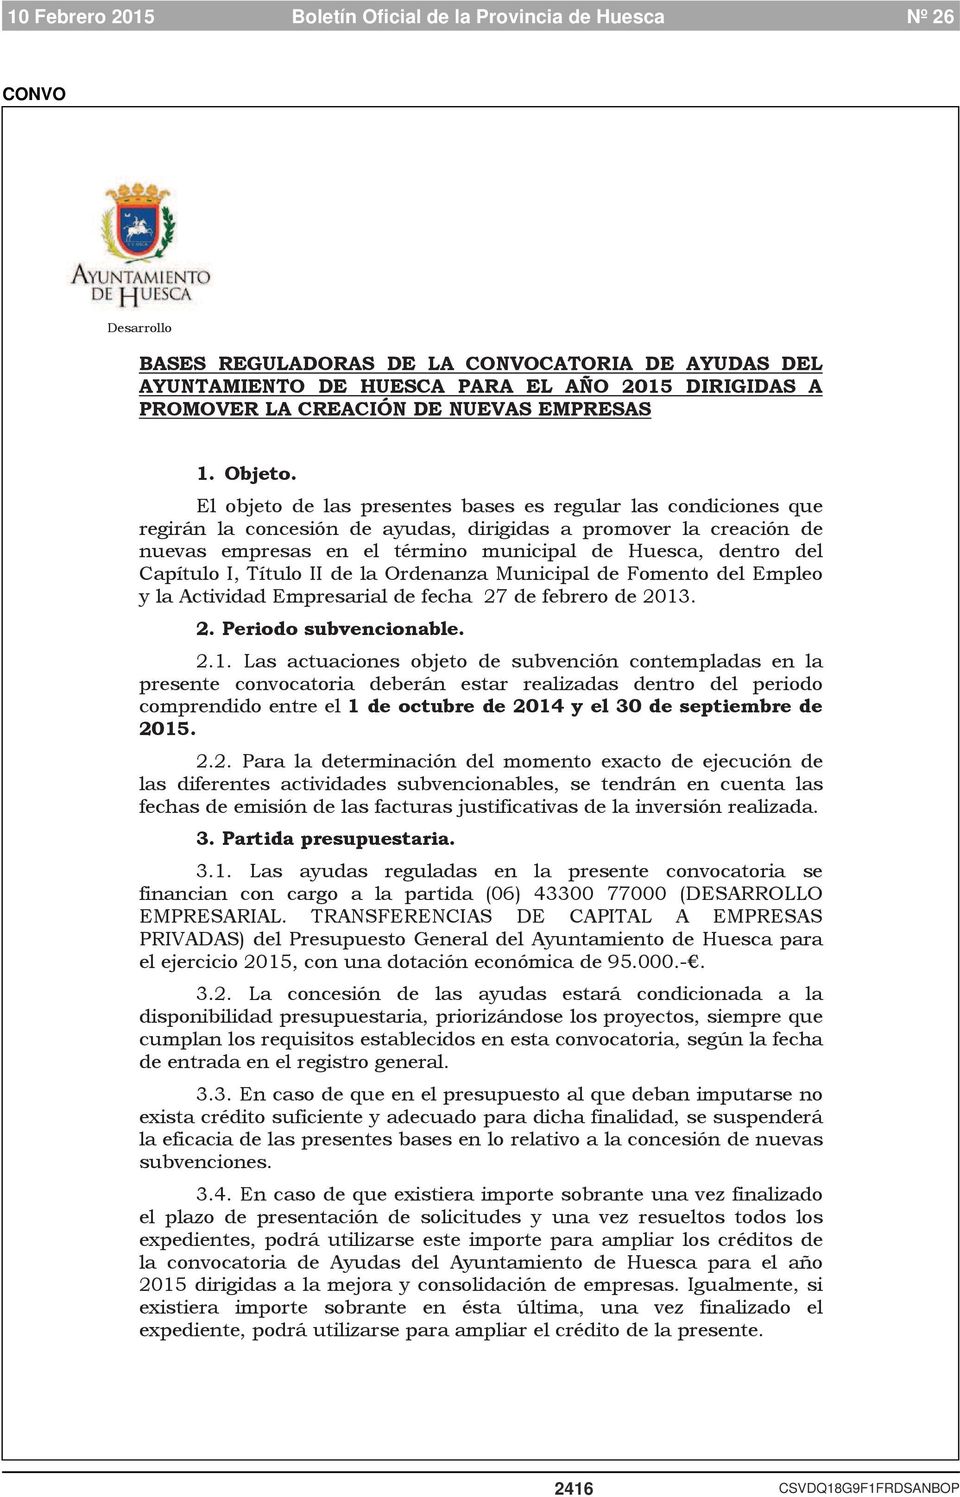 Capítulo I, Título II de la Ordenanza Municipal de Fomento del Empleo y la Actividad Empresarial de fecha 27 de febrero de 2013